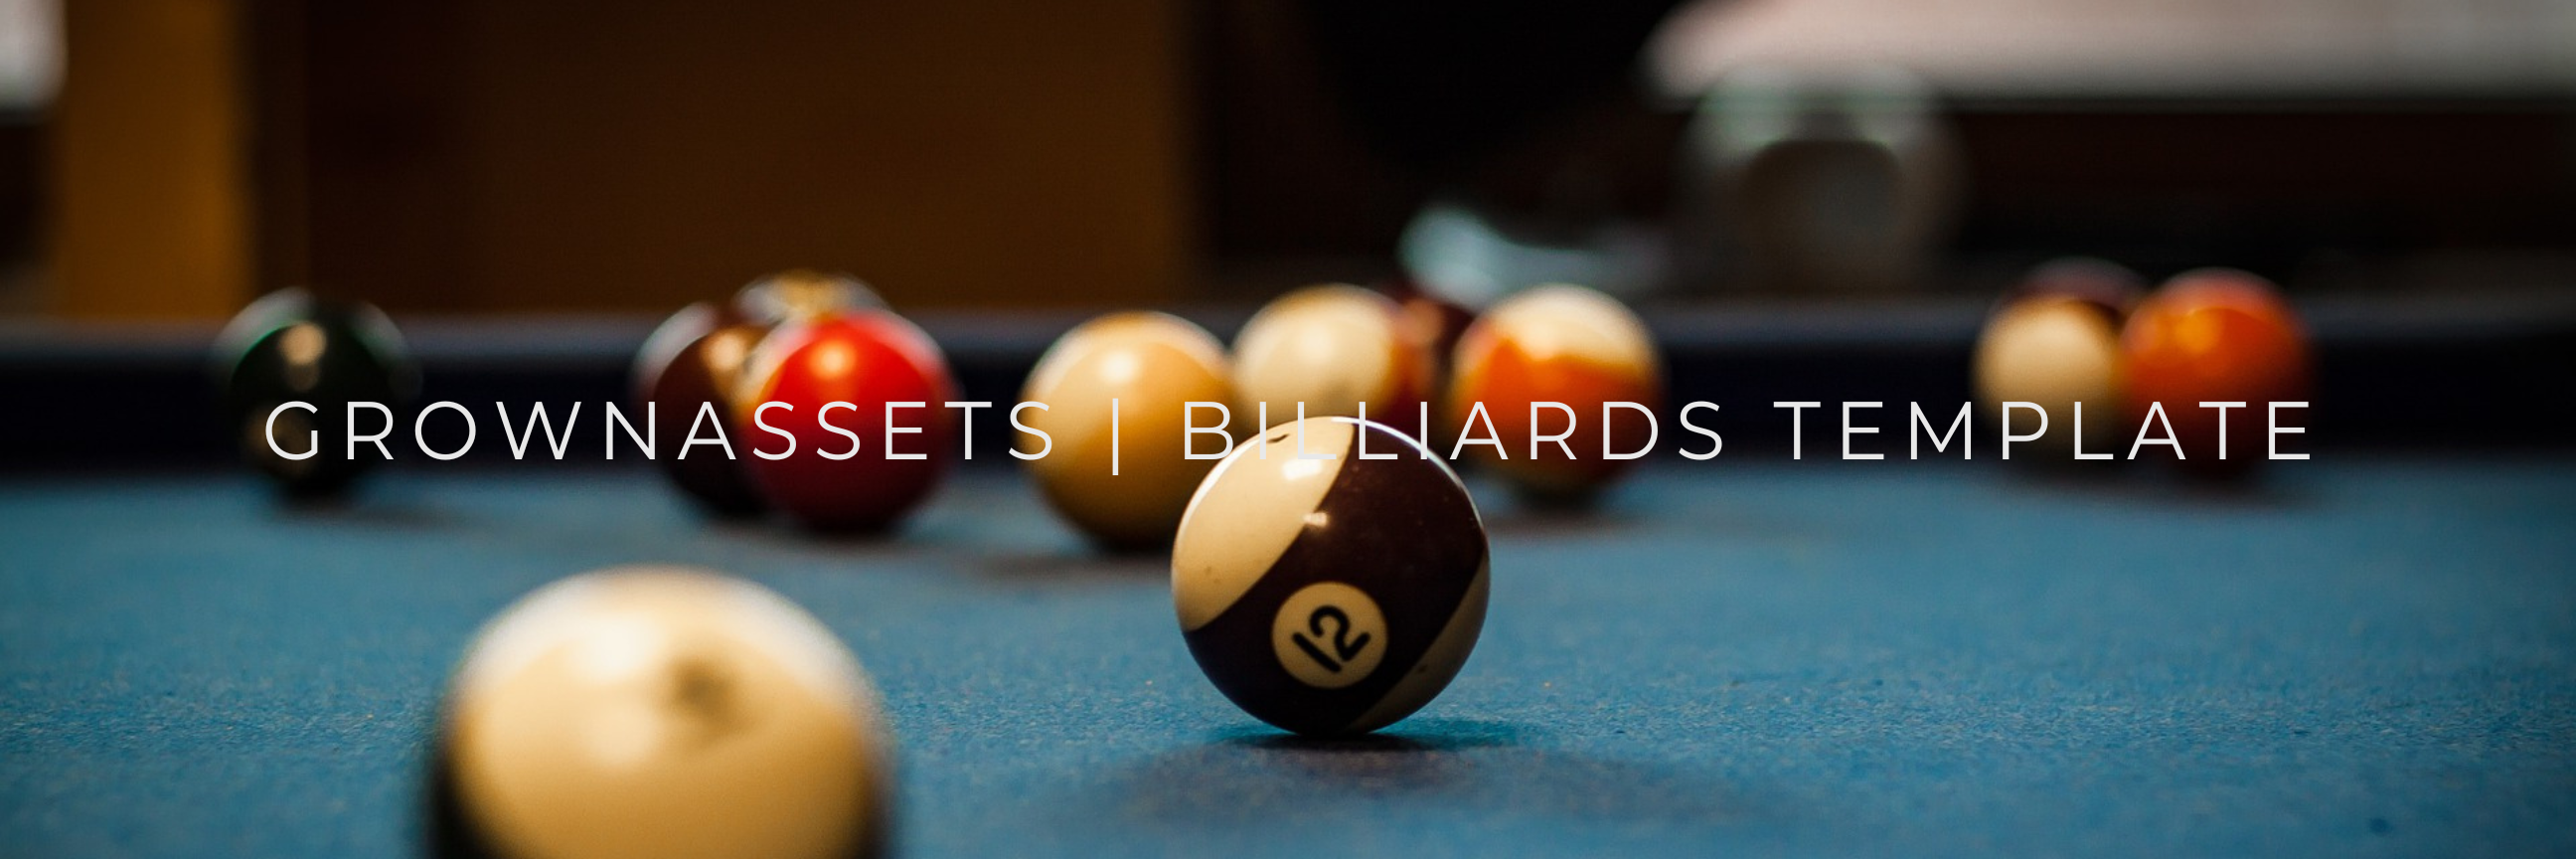 Grown Assets | Billiards Template